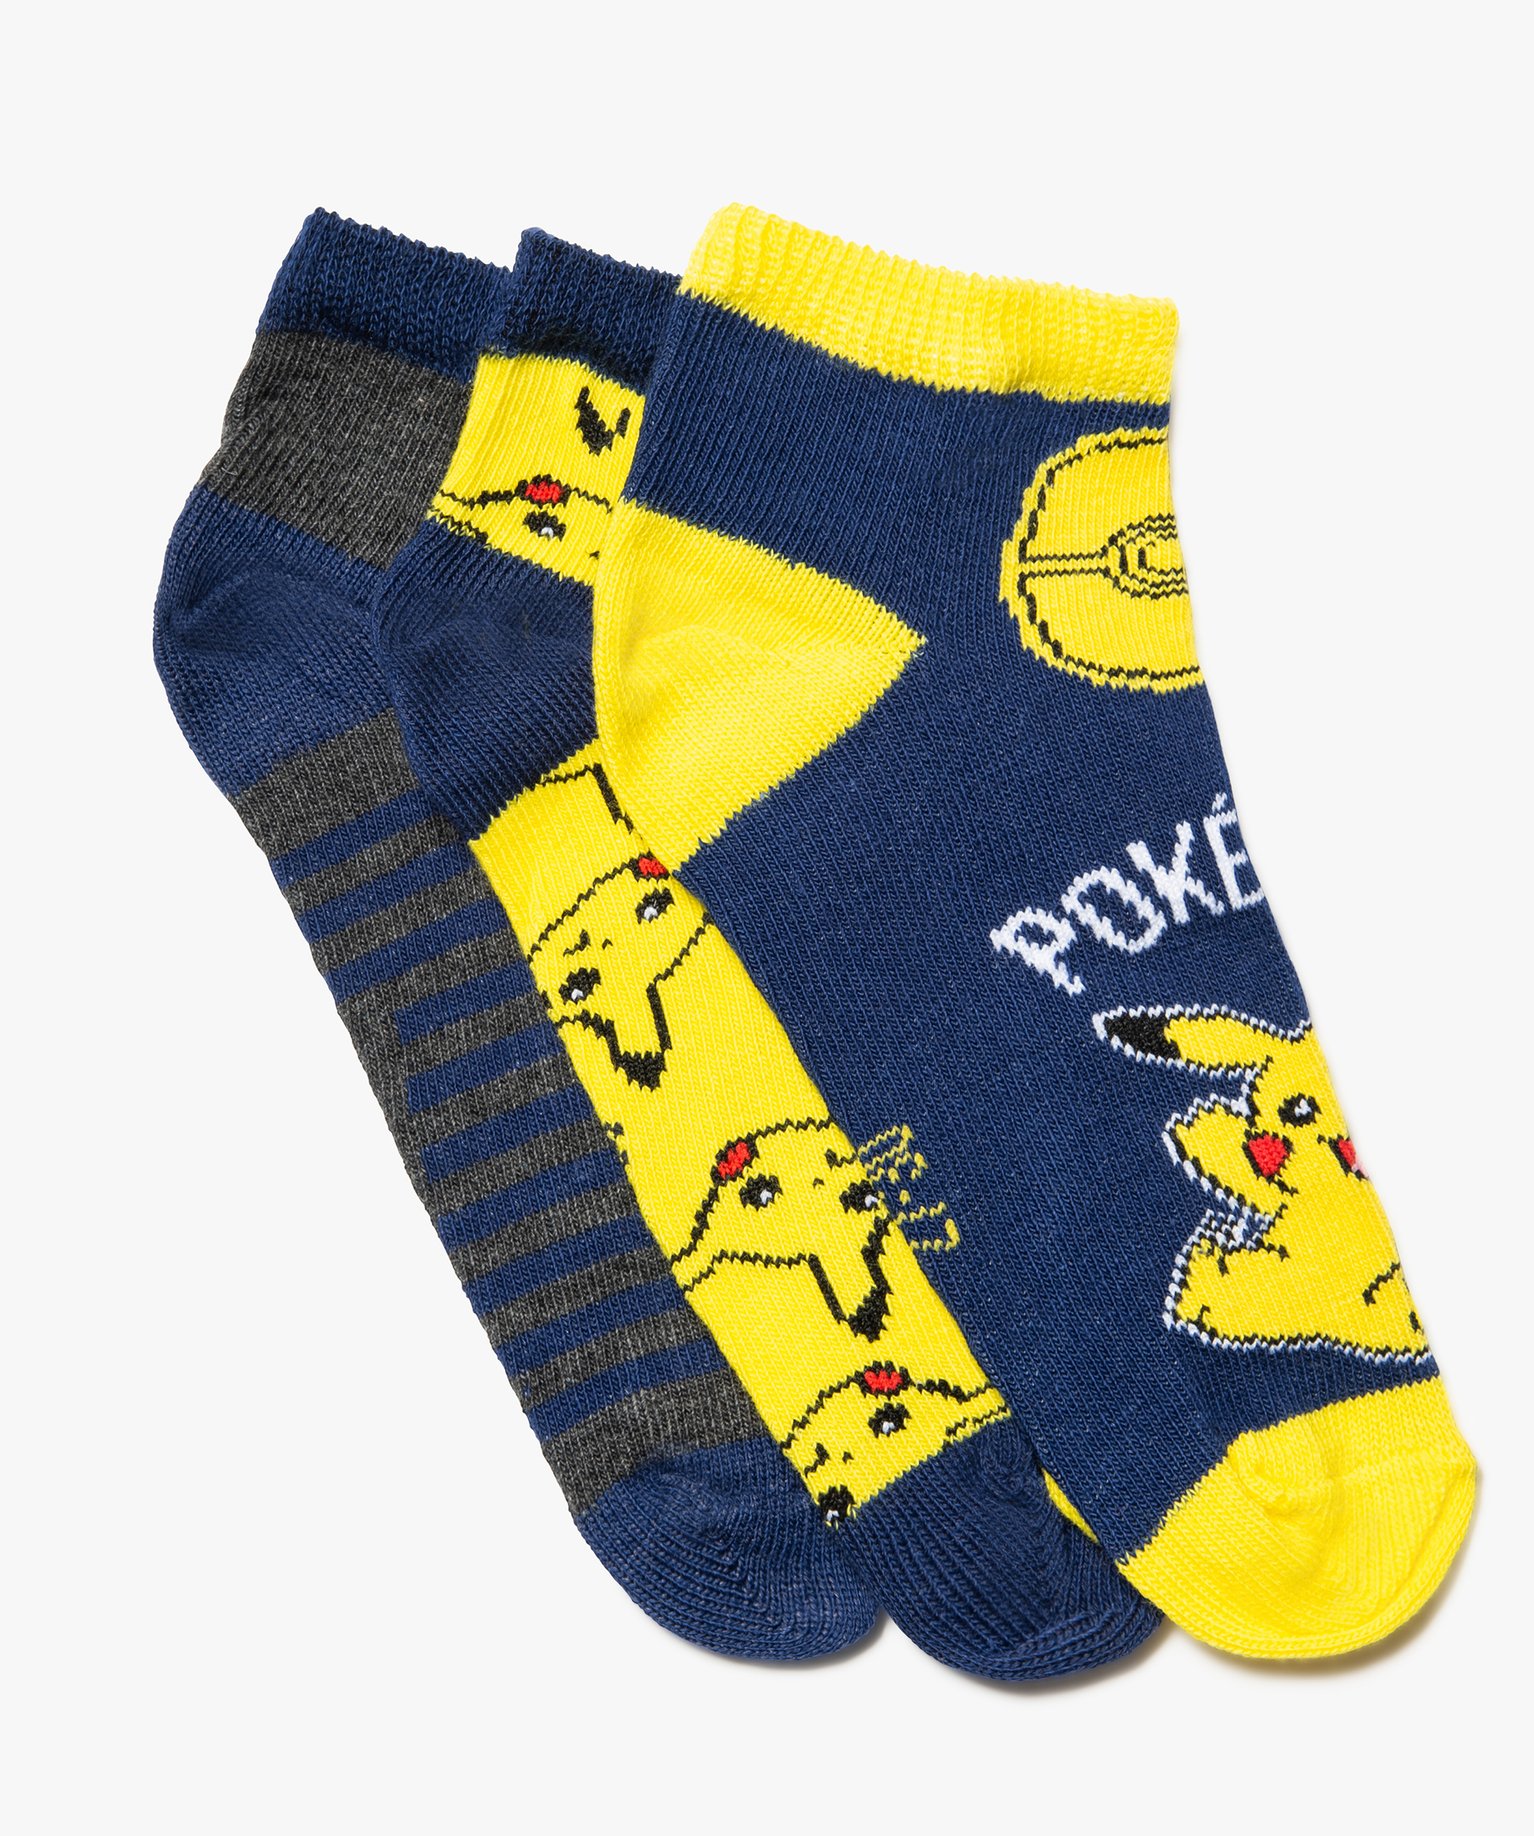 chaussettes garcon ultracourtes imprimees - pokemon (lot de 3) bleu